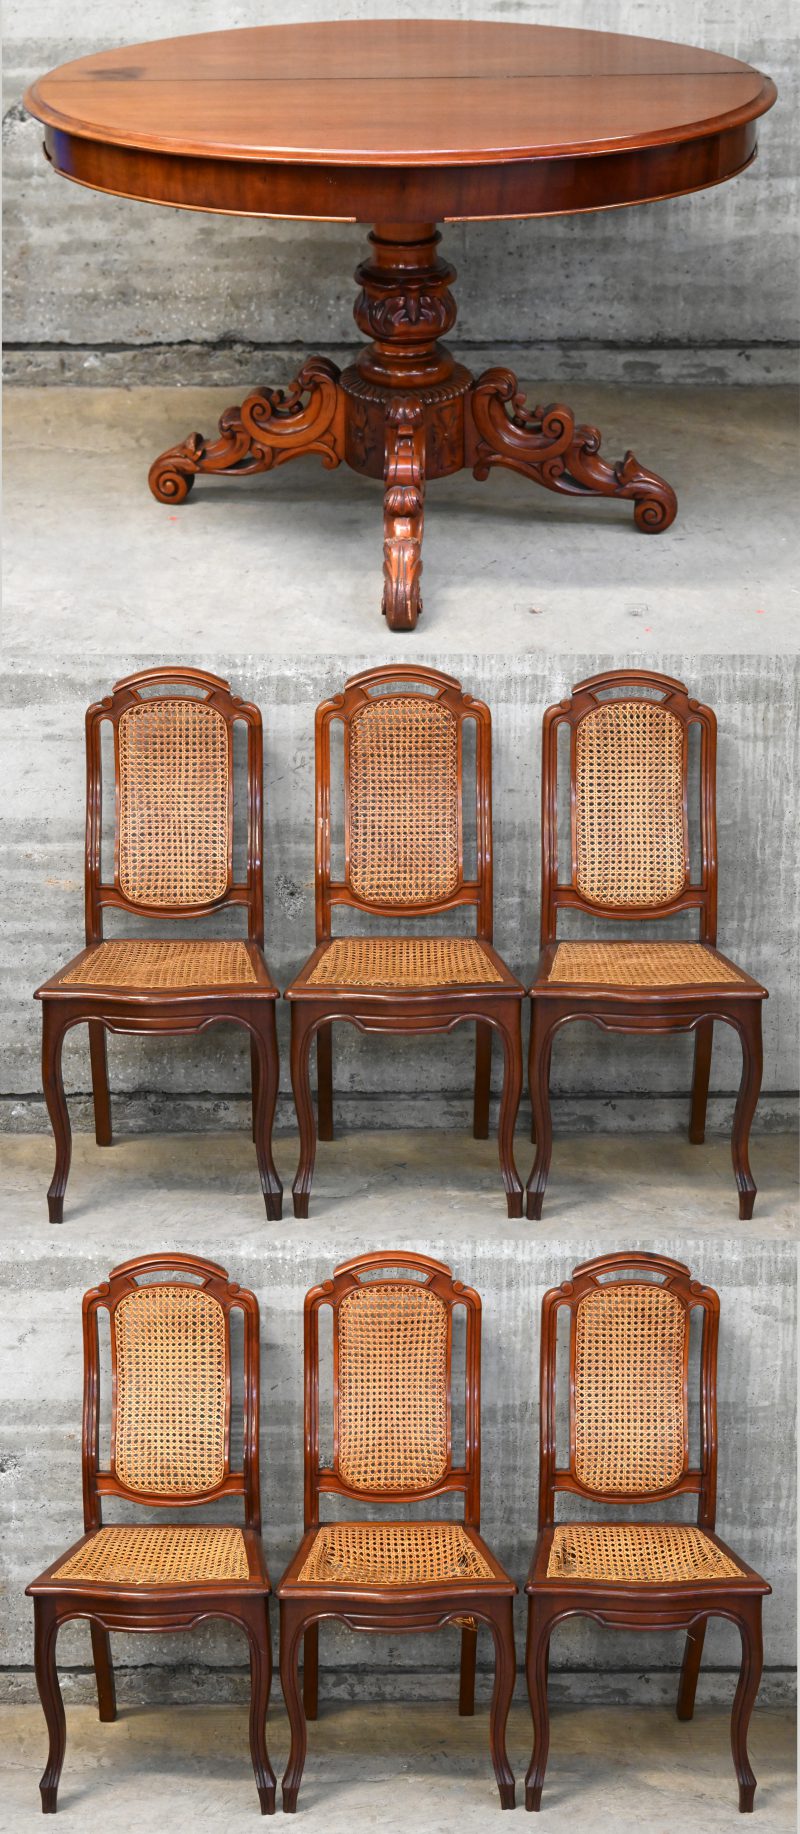 Een ovale mahoniehouten tafel met gebeeldhouwde centrale driepoot. Verlengbaar maar zonder verlengbladen. Victoriaanse stijl. Vergezeld van zes soortgelijke stoelen met gevlochten zittingen (riet te vervangen). Diverse letsels.